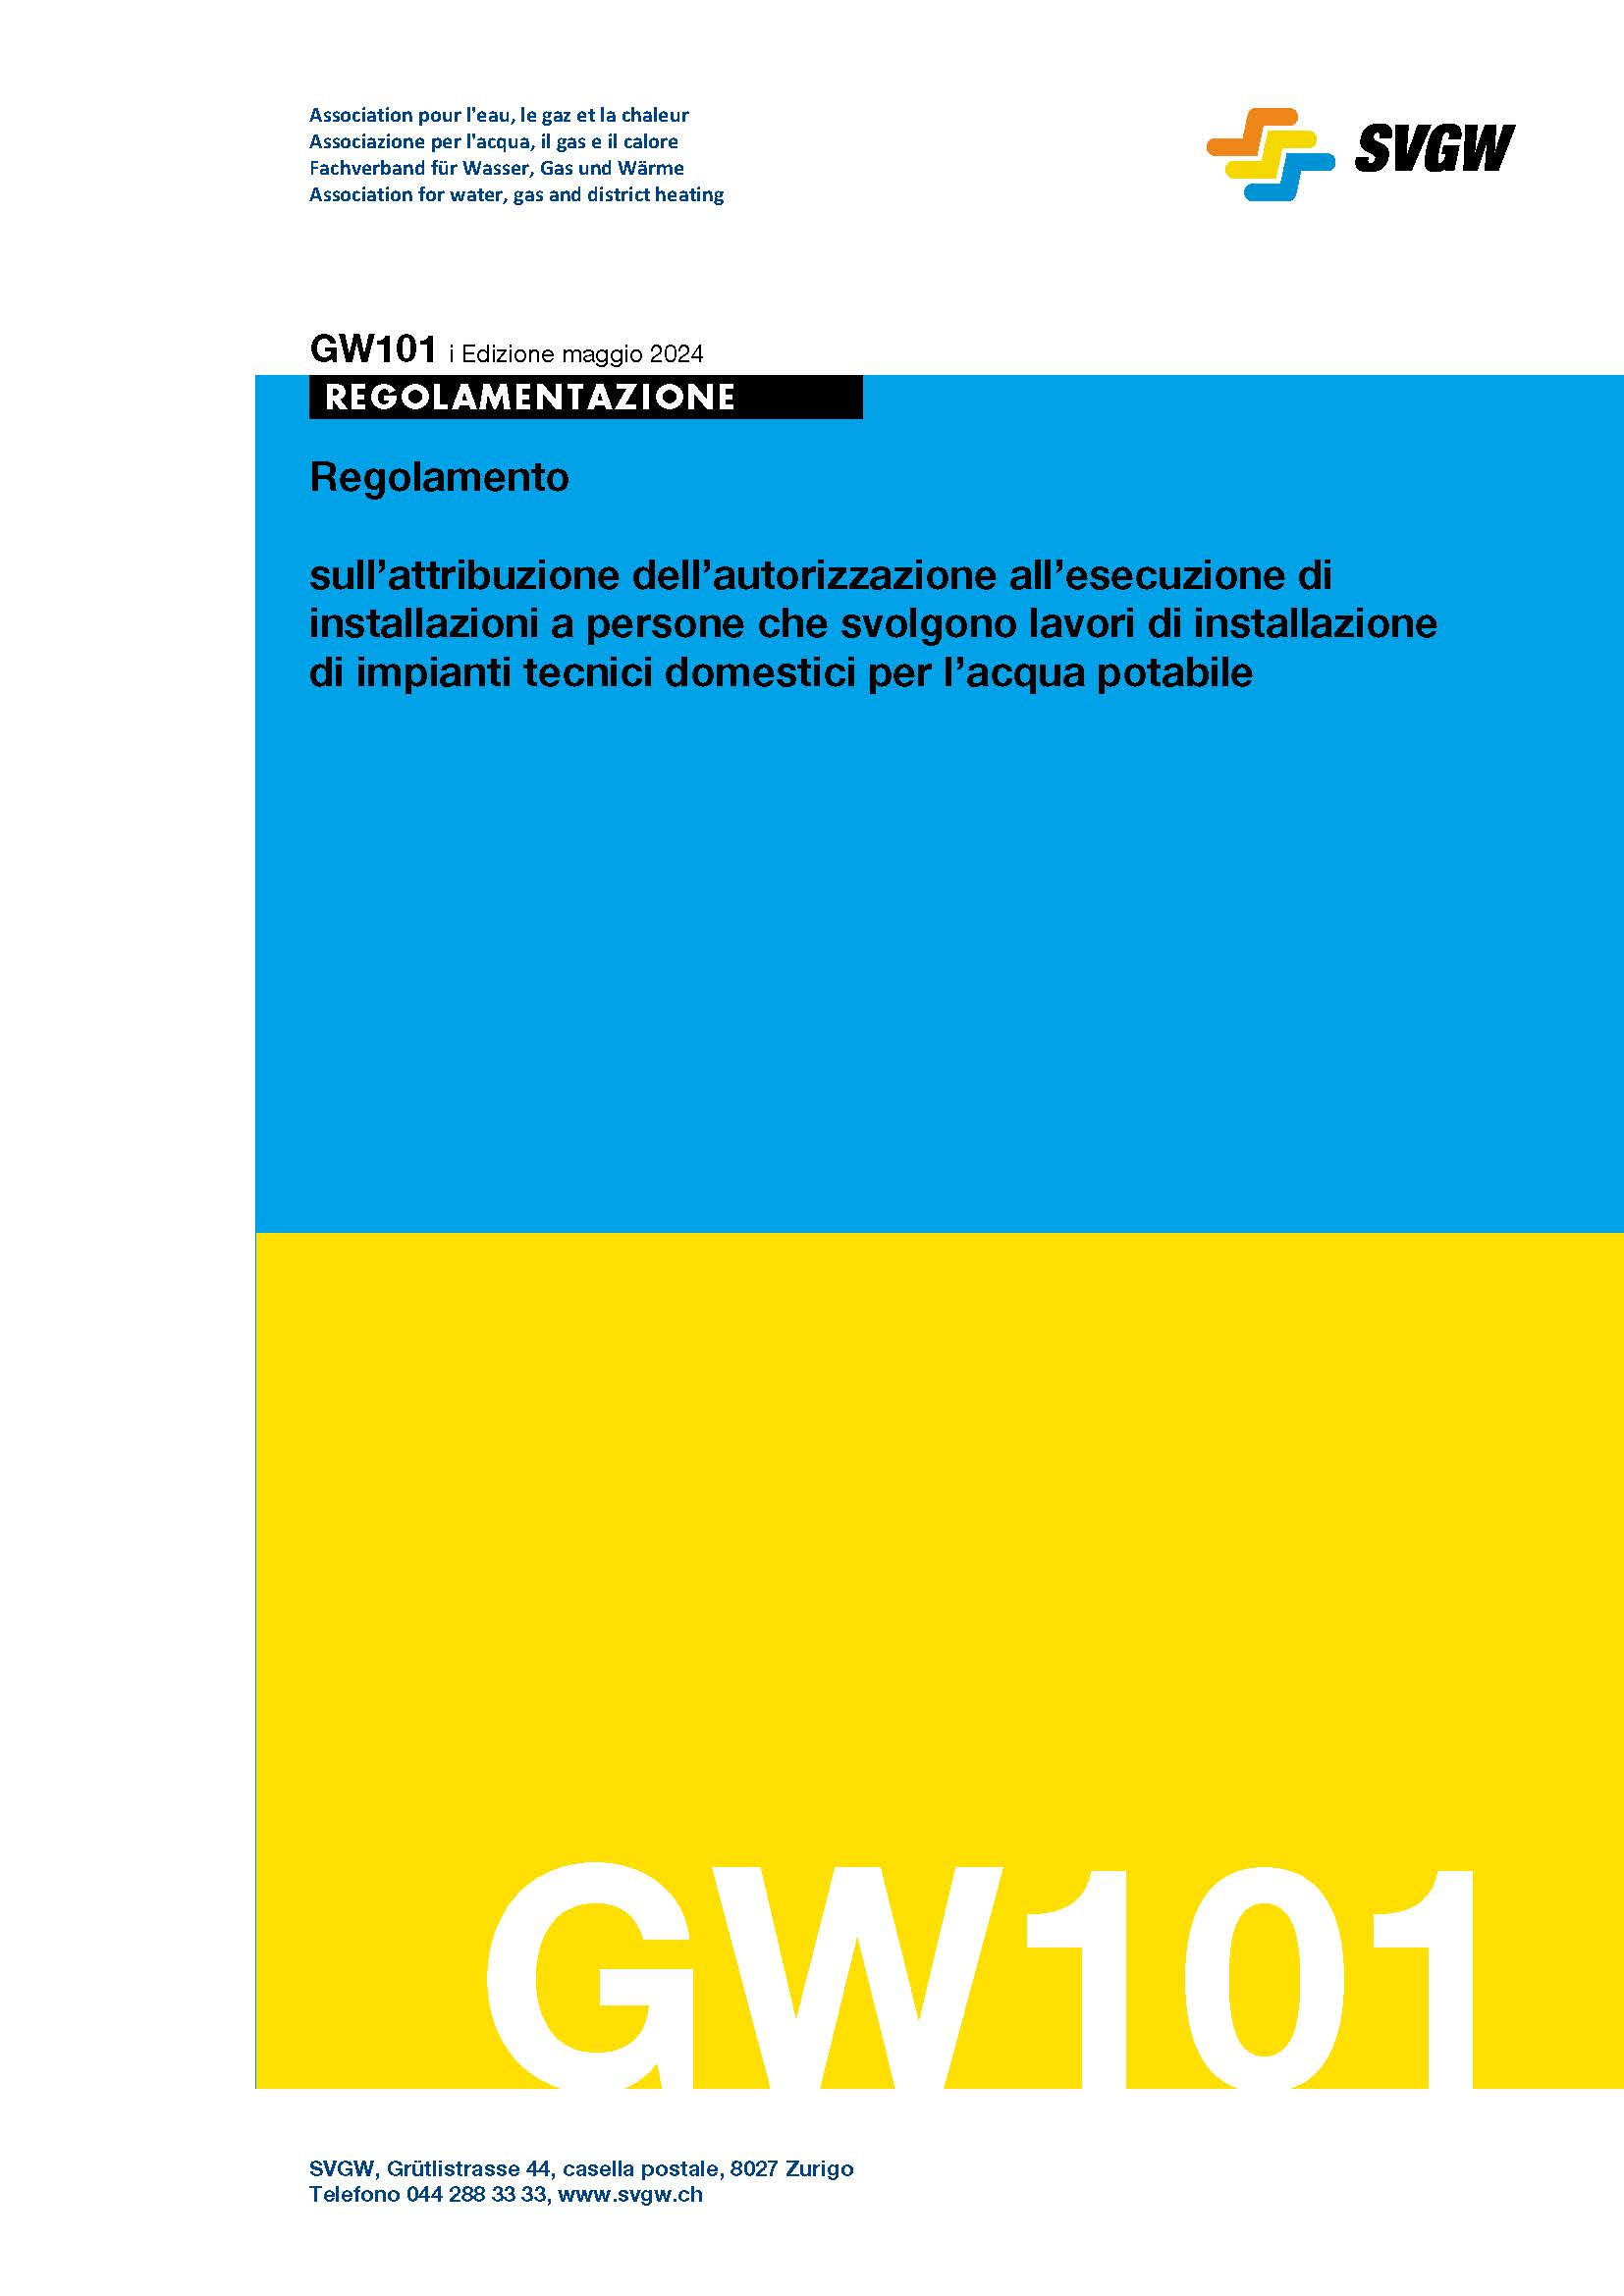 GW101 i Regolamento sull’attribuzione dell’autorizzazione all’esecuzione di installazioni a persone che svolgono lavori di installazione di impianti tecnici domestici per l’acqua potabile